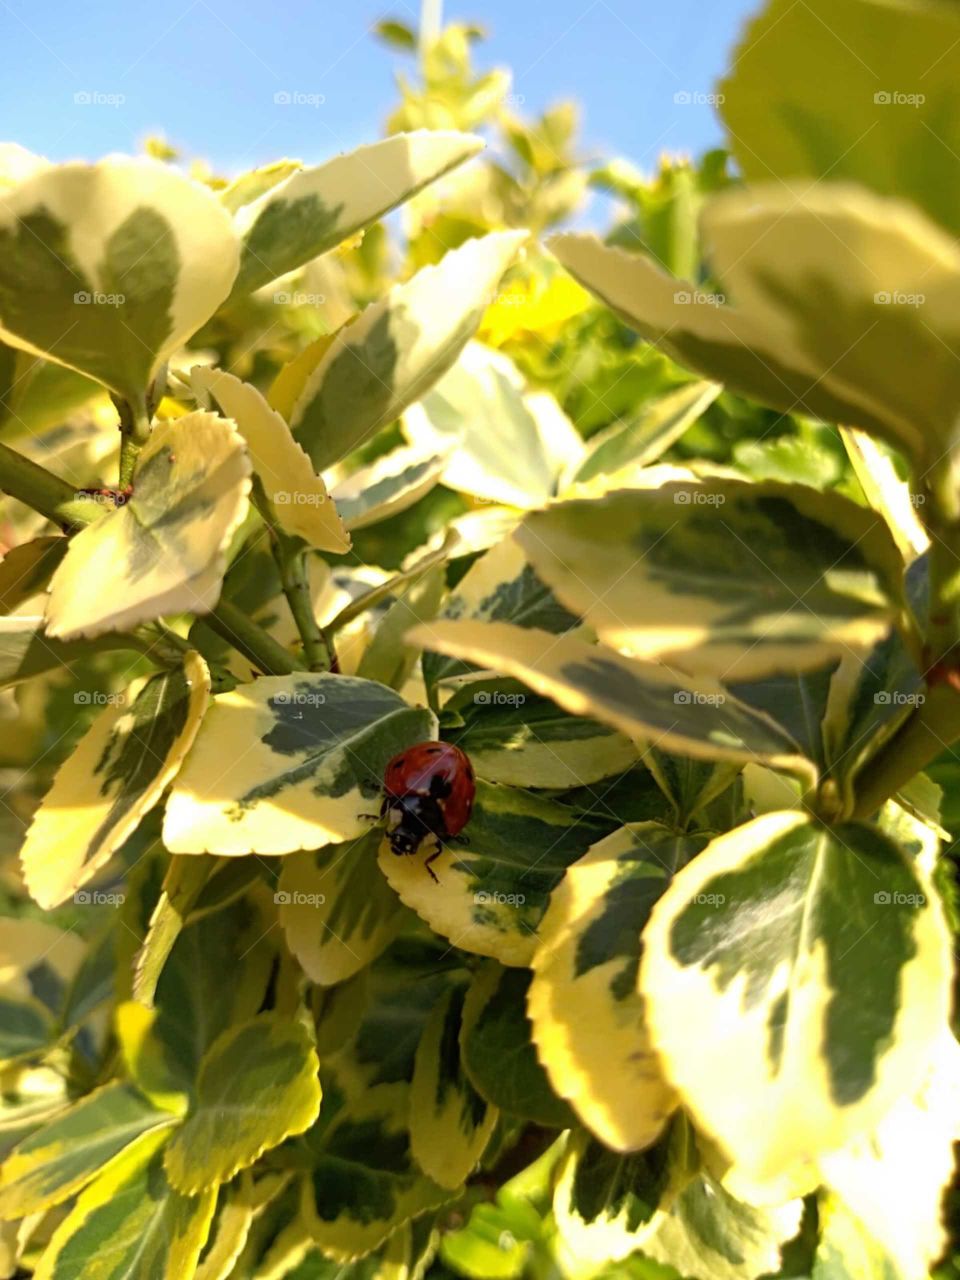 Ladybug in nature